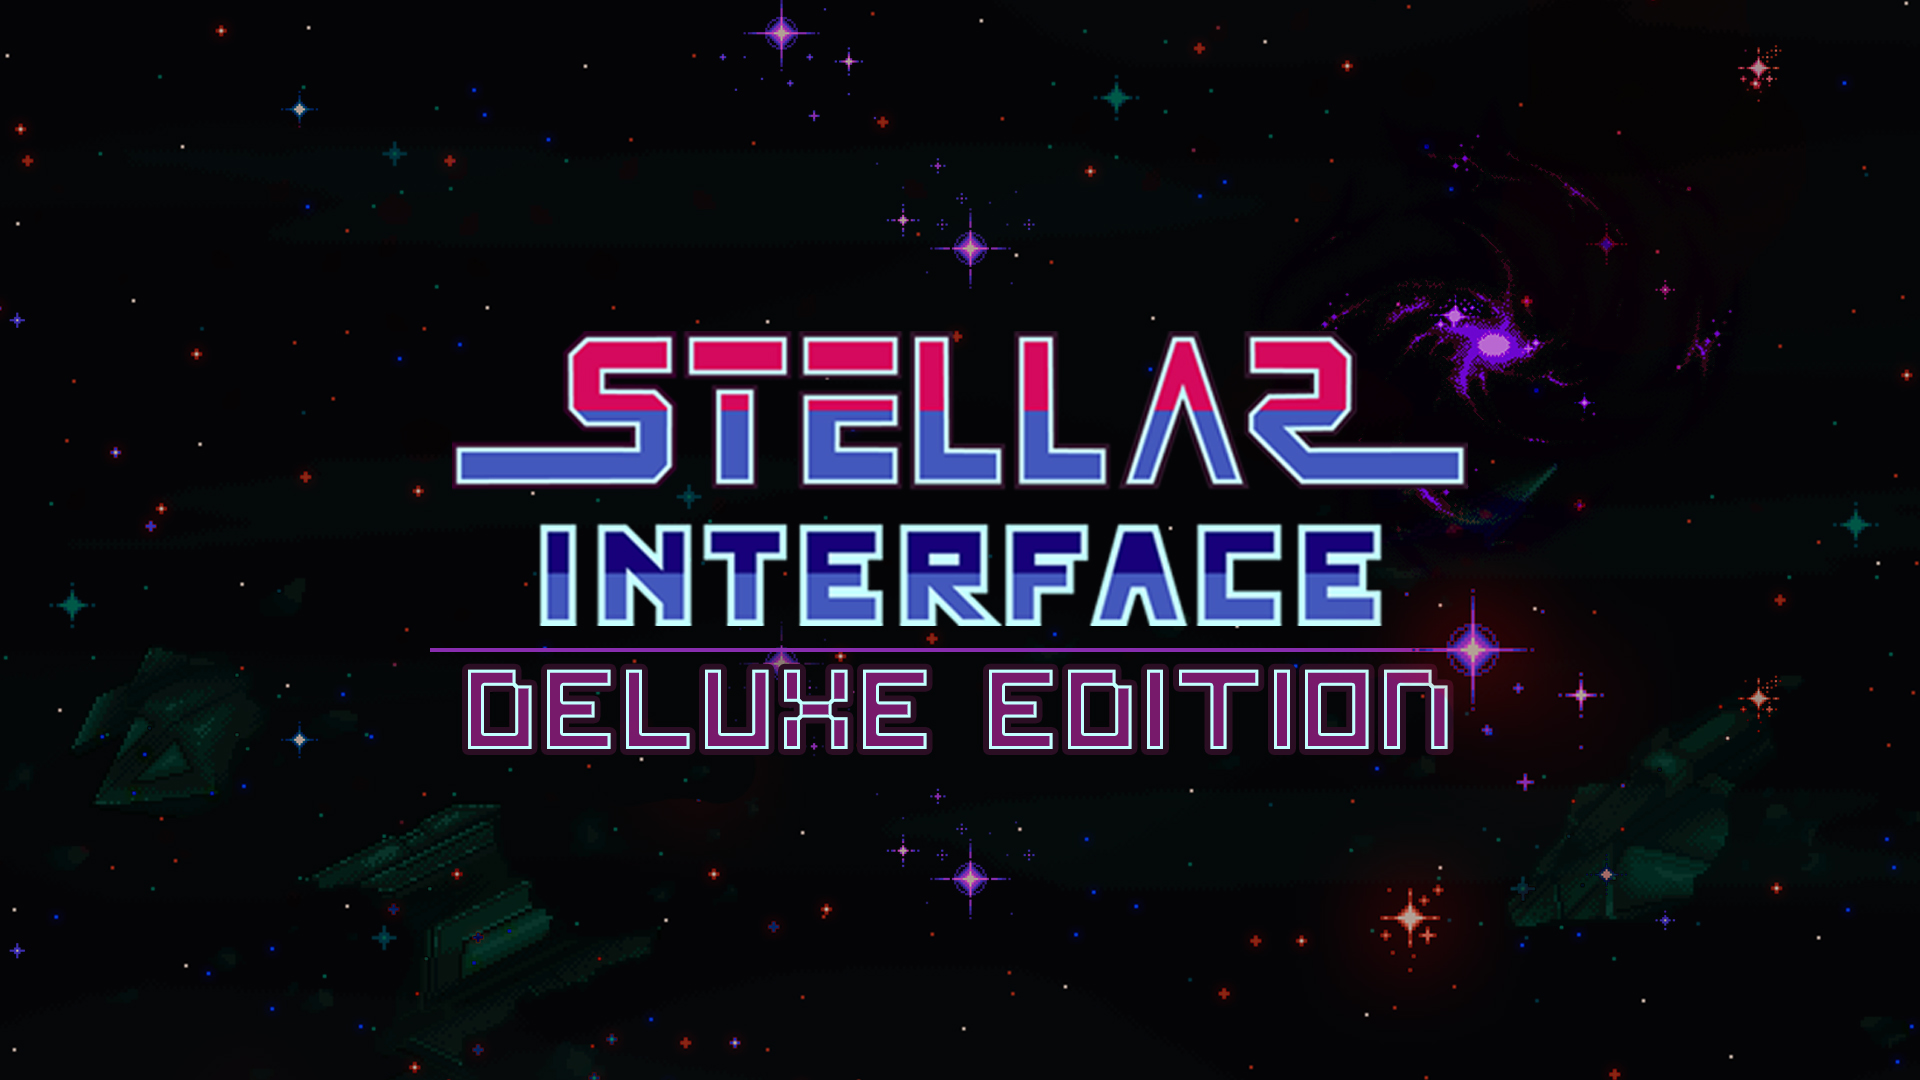 Stellar Interface for mac download free